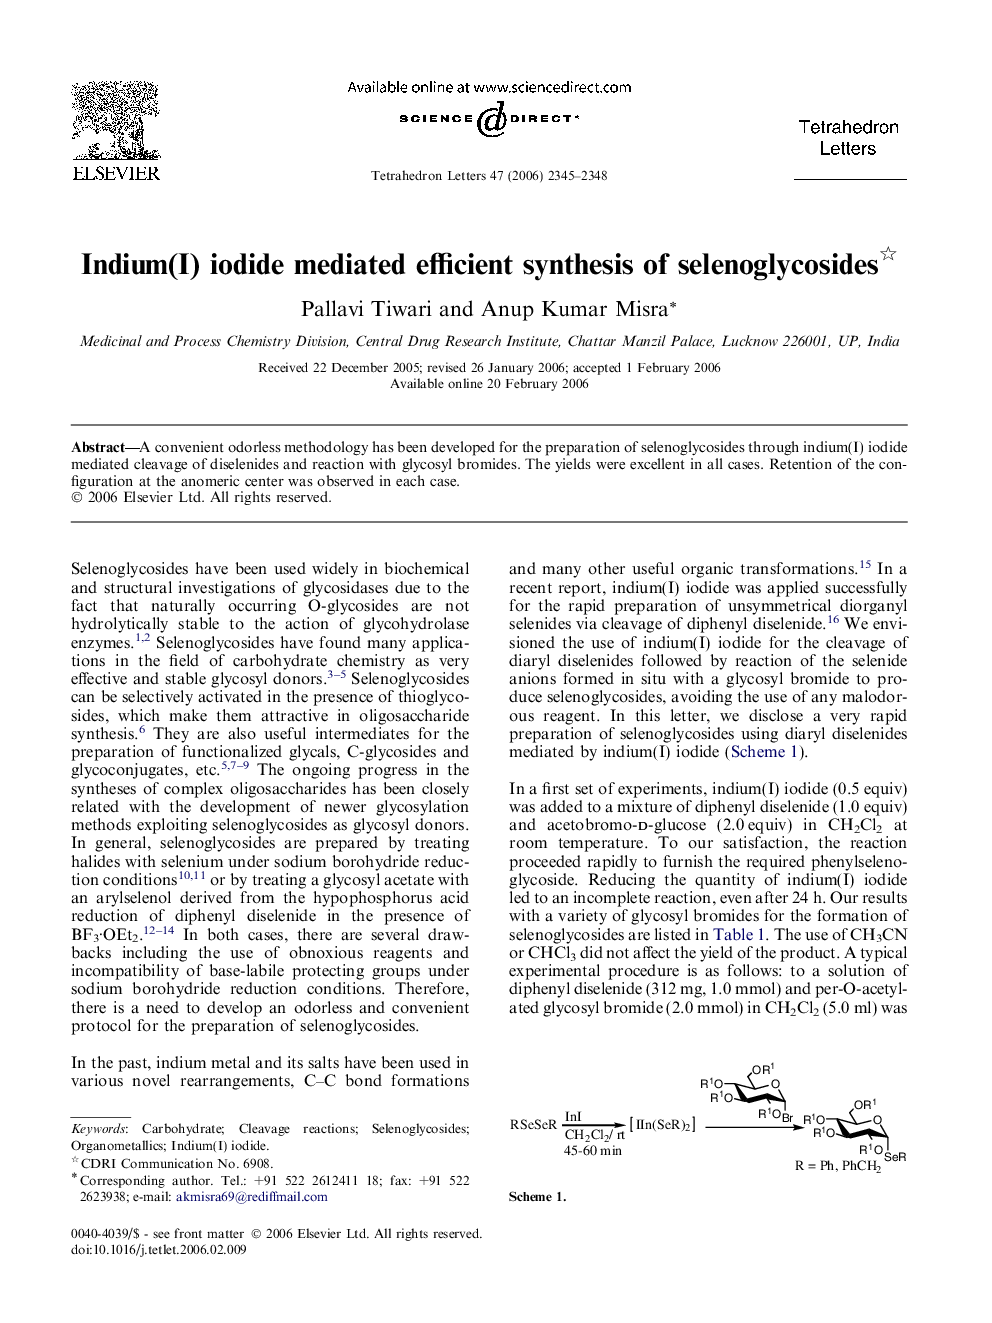 Indium(I) iodide mediated efficient synthesis of selenoglycosides